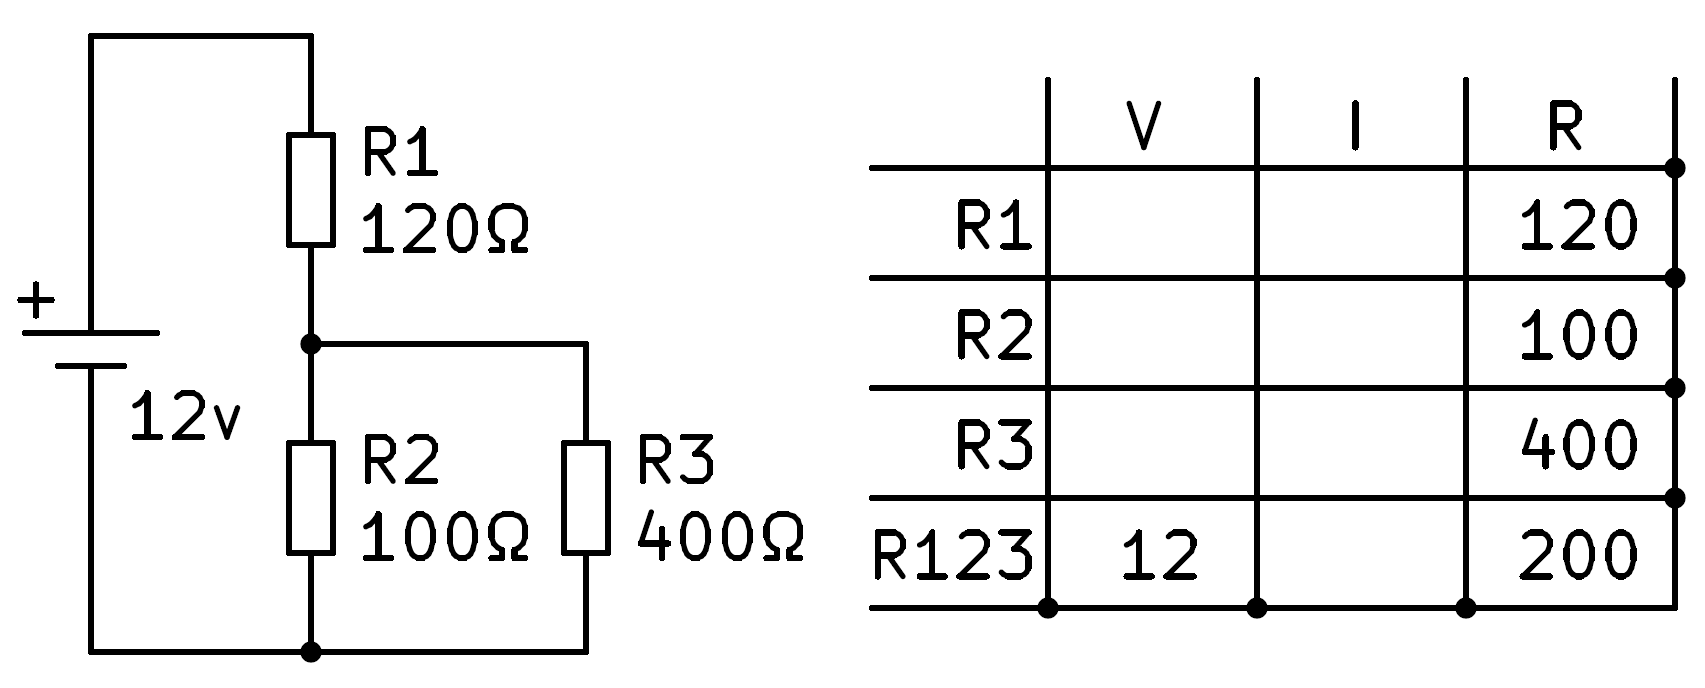 Cálculos de un circuito mixto serie-paralelo.